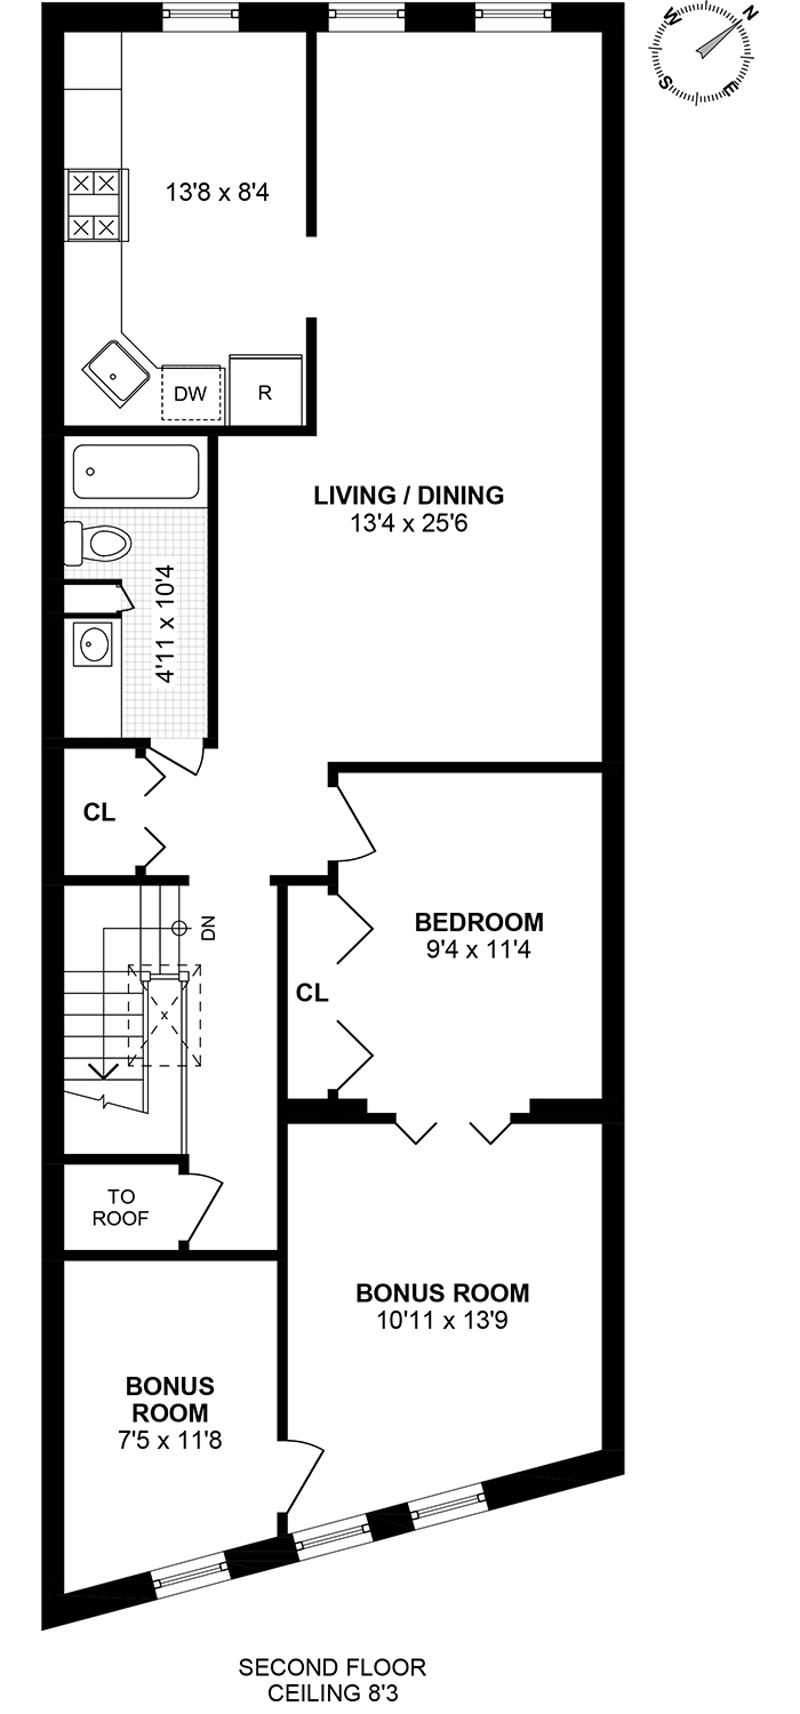 Floorplan for 9104 Fourth Avenue